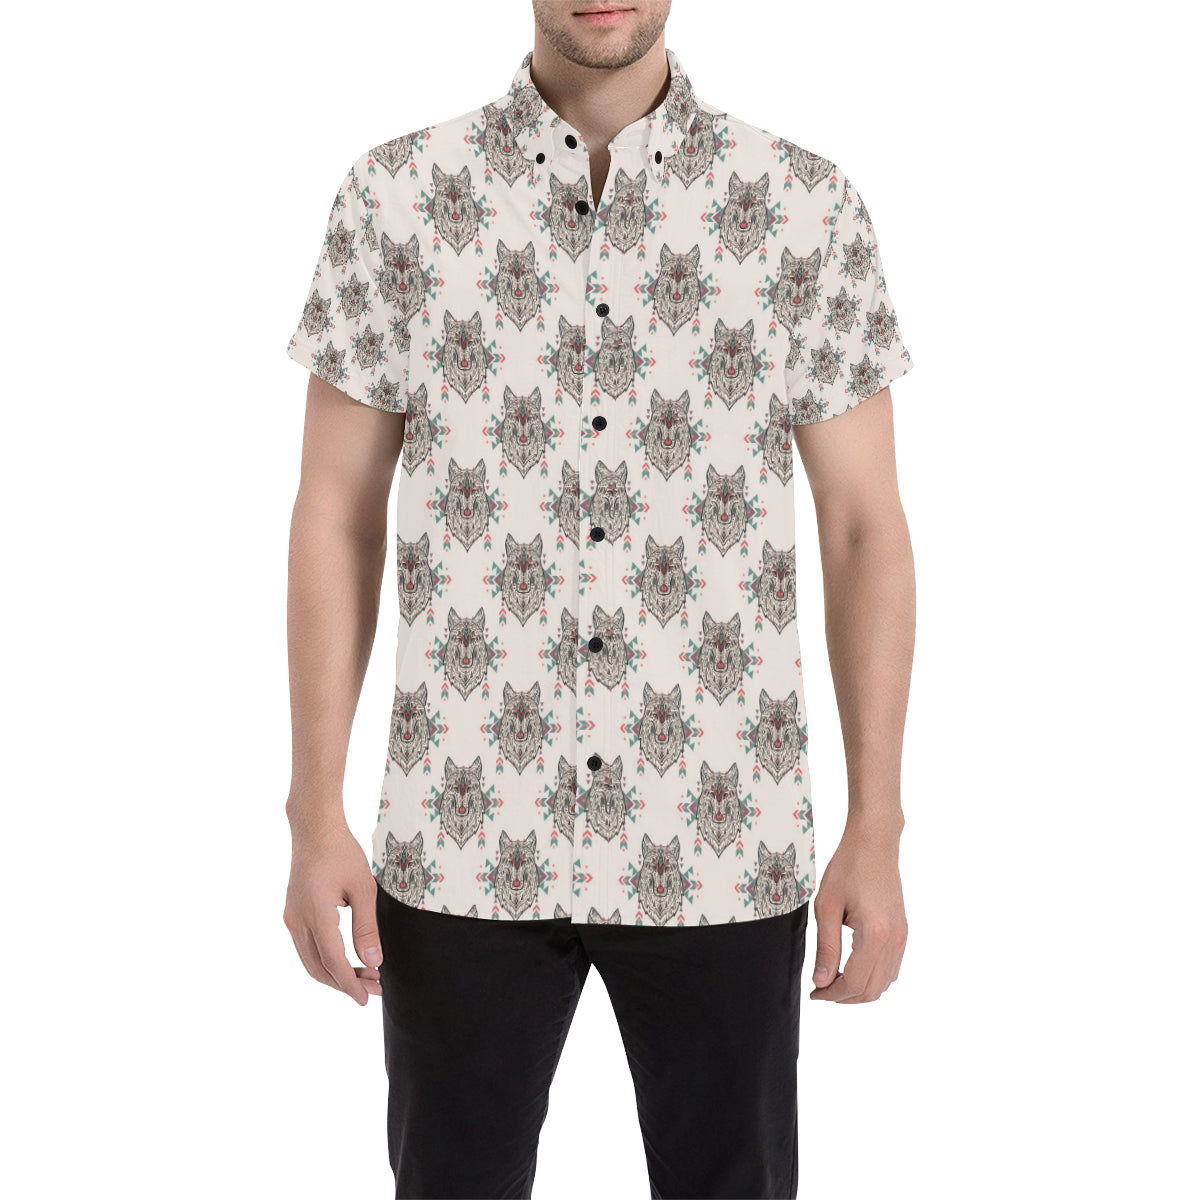 Aztec Wolf Pattern Print Design 01 Men's Short Sleeve Button Up Shirt